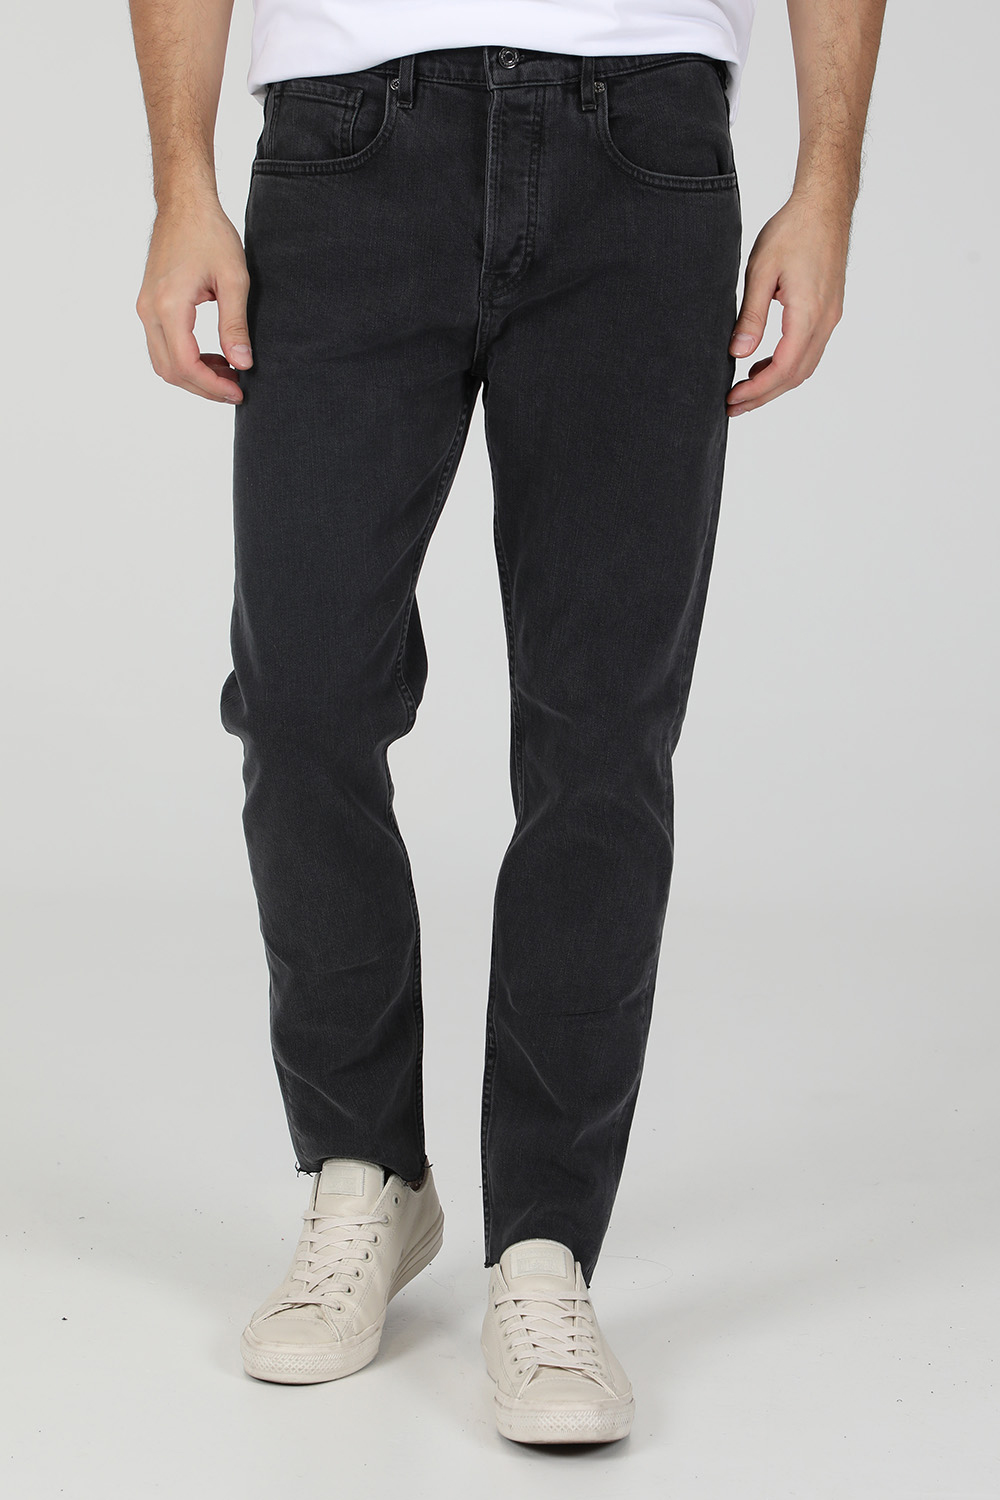 Ανδρικά/Ρούχα/Παντελόνια/Jean SCOTCH & SODA - Ανδρικό jean παντελόνι SCOTCH & SODA NORM μαύρο